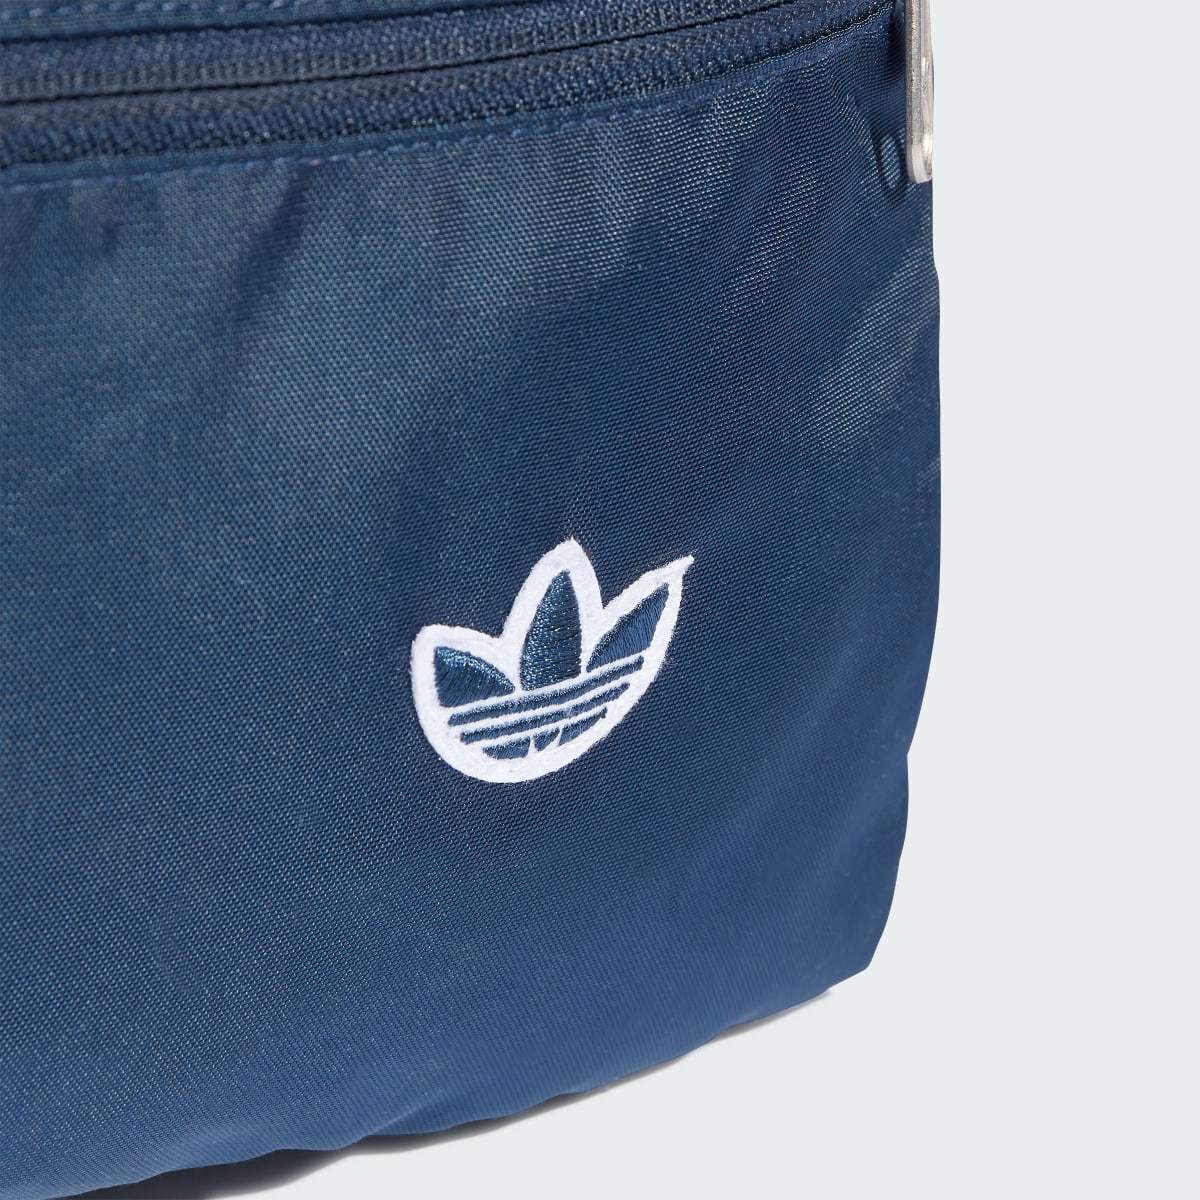 Adidas Premium Essentials Backpack. 6